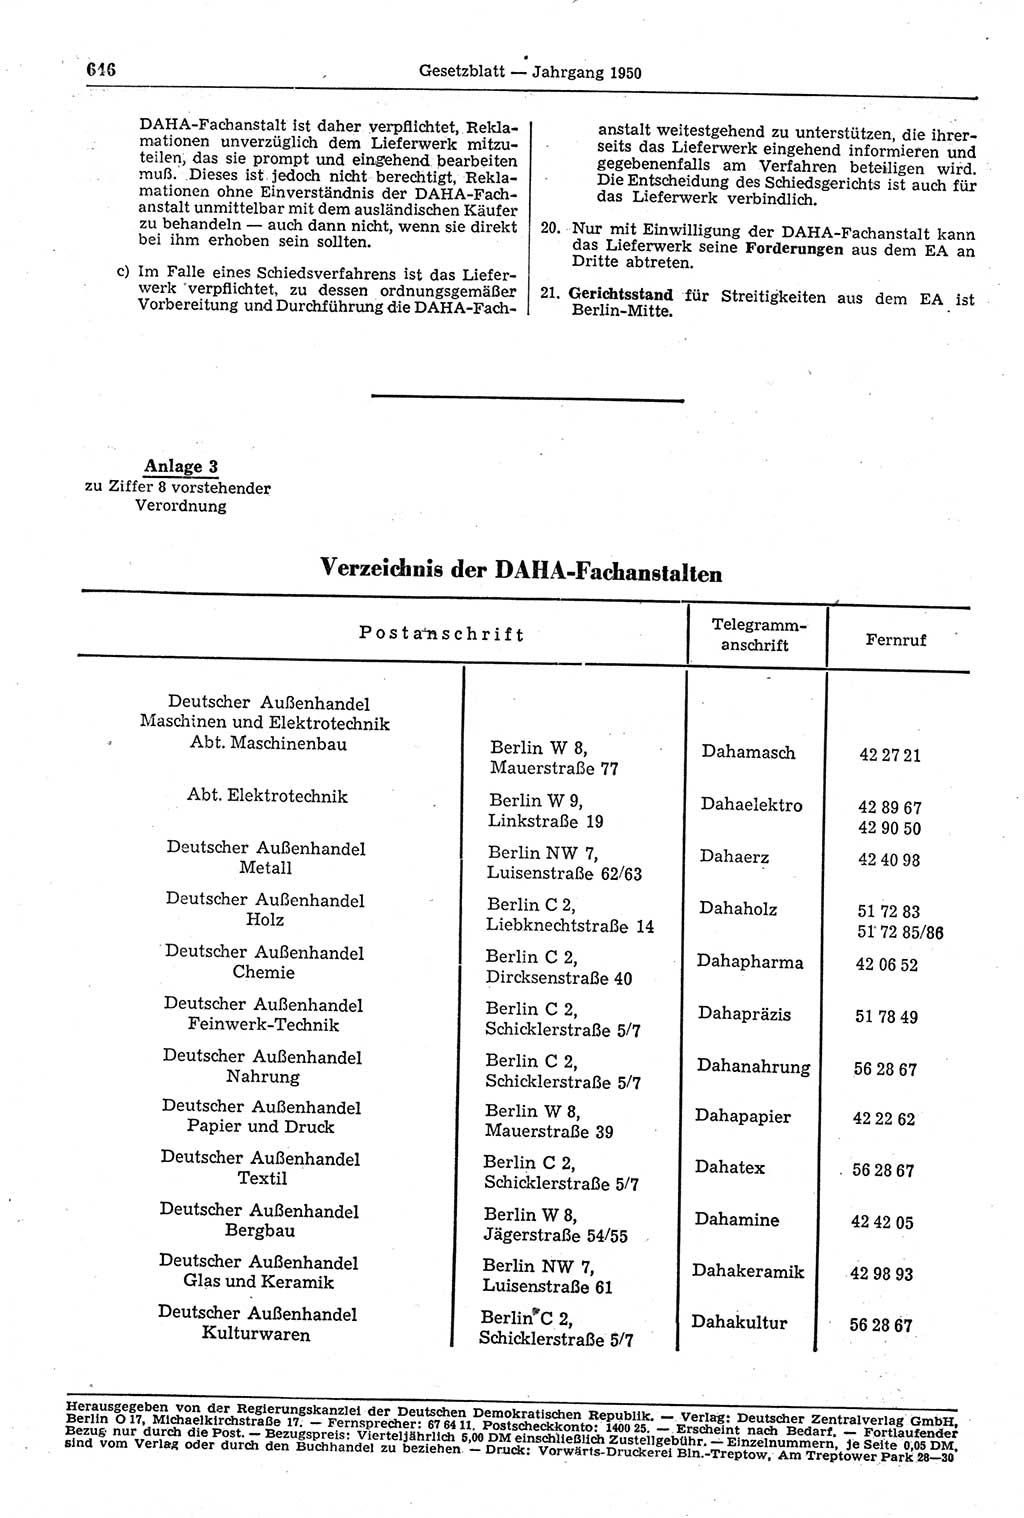 Gesetzblatt (GBl.) der Deutschen Demokratischen Republik (DDR) 1950, Seite 646 (GBl. DDR 1950, S. 646)